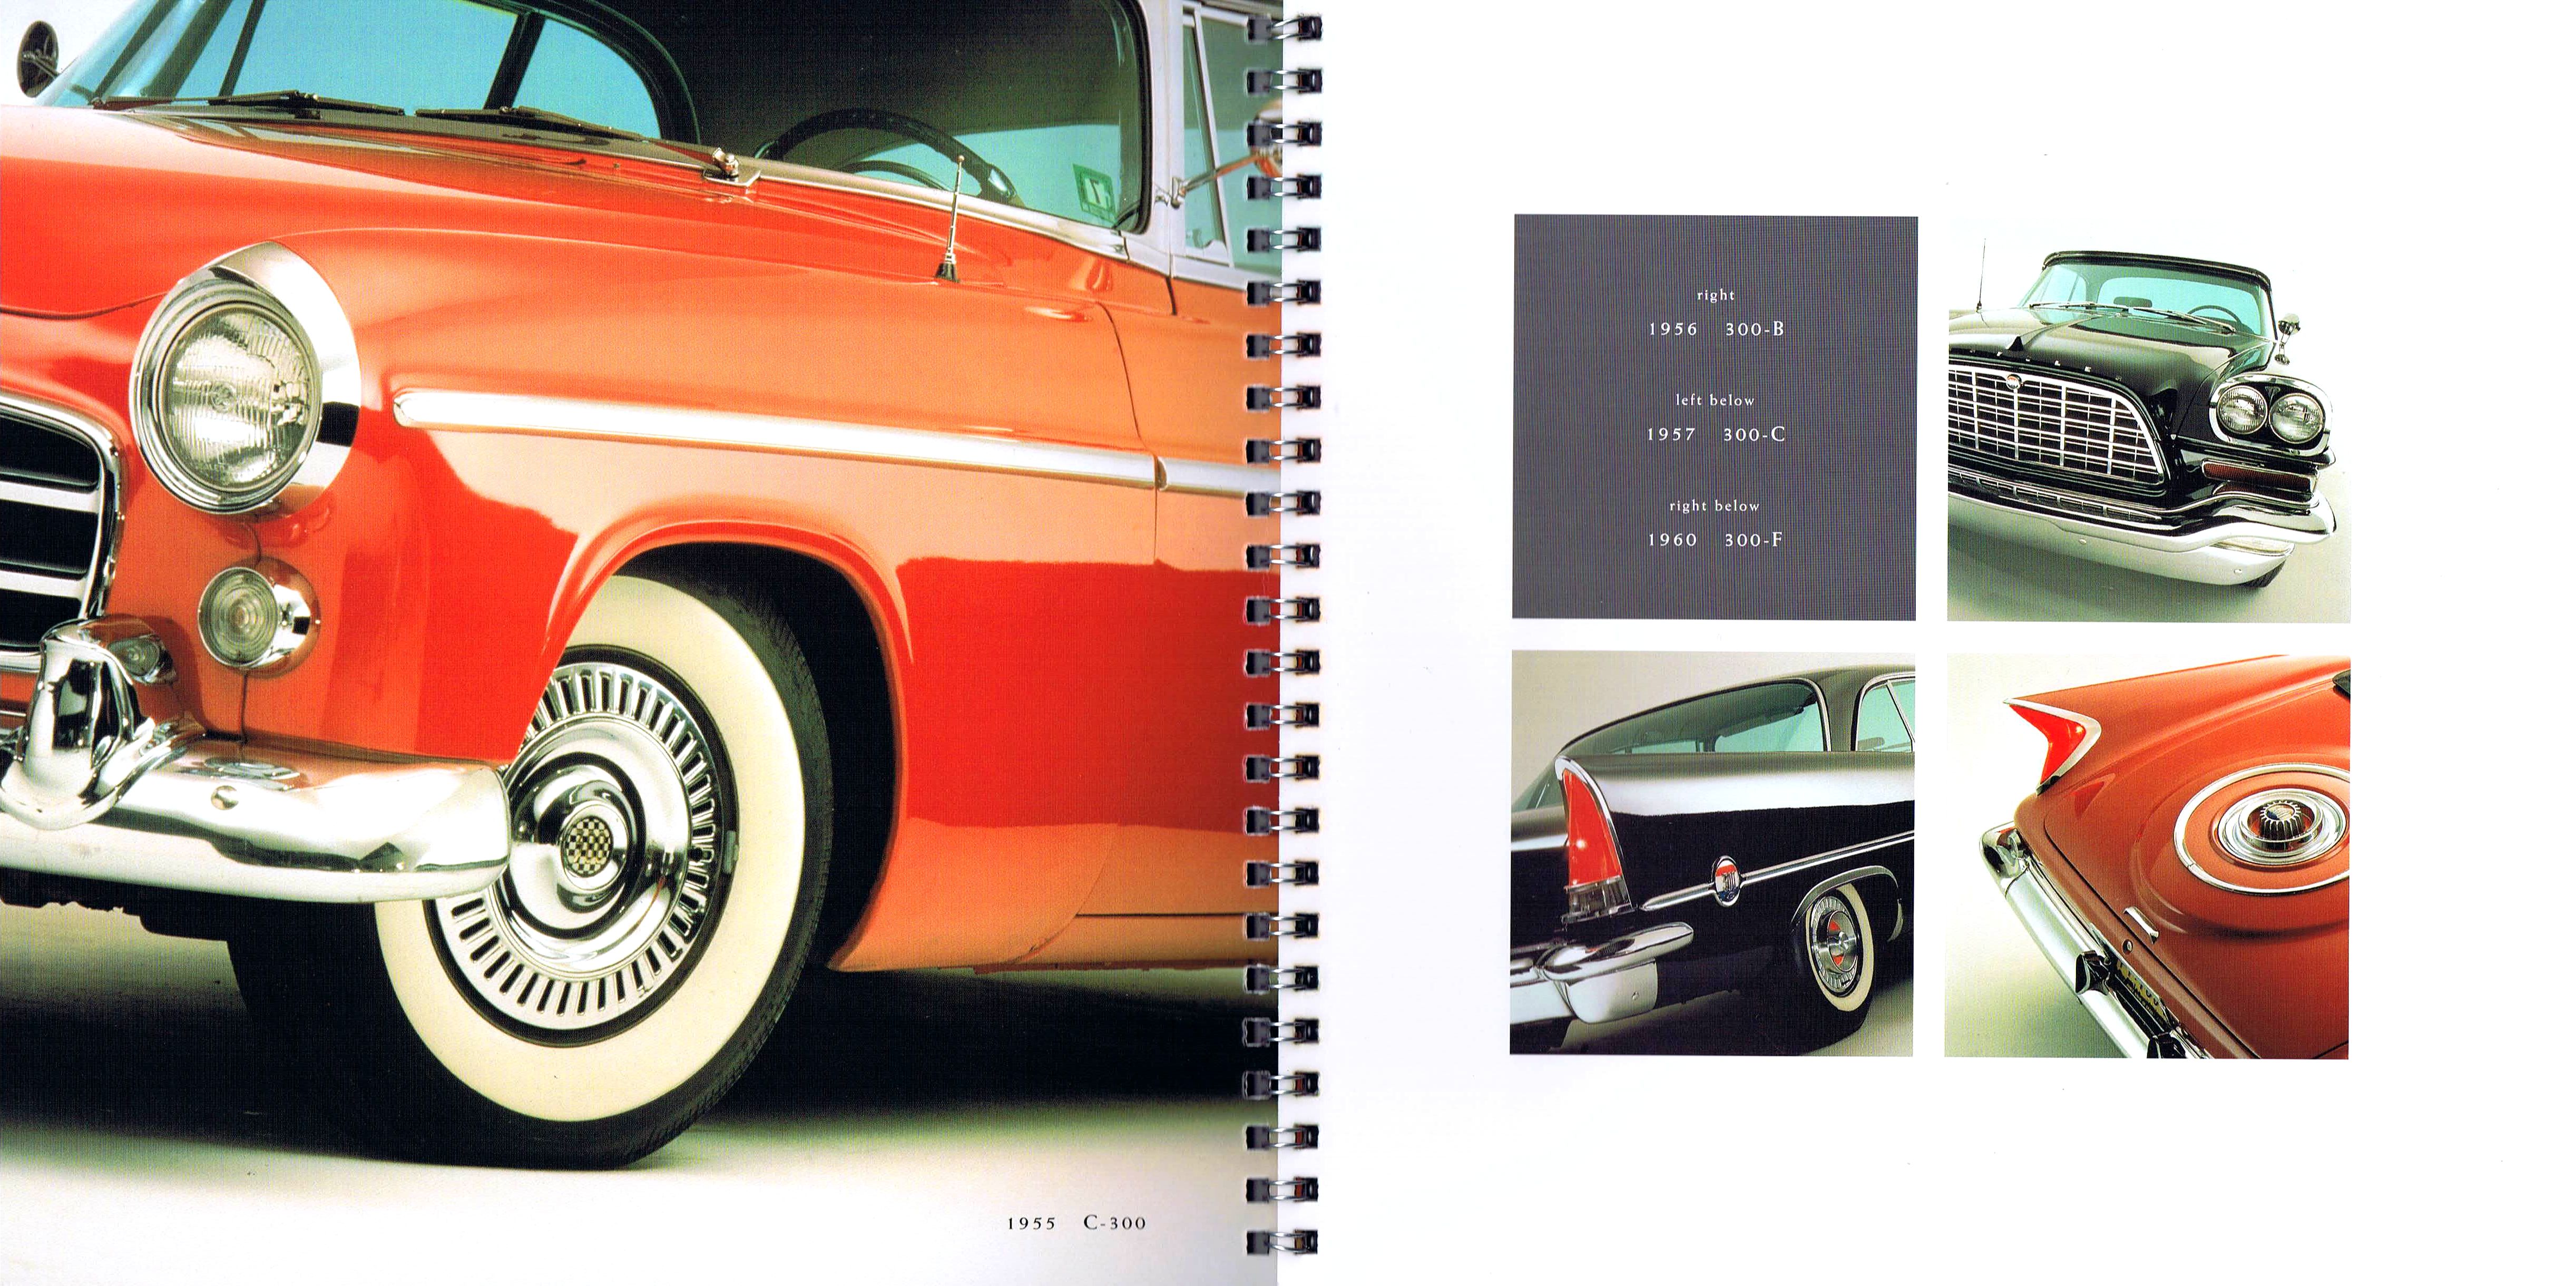 Chrysler 300M brochure